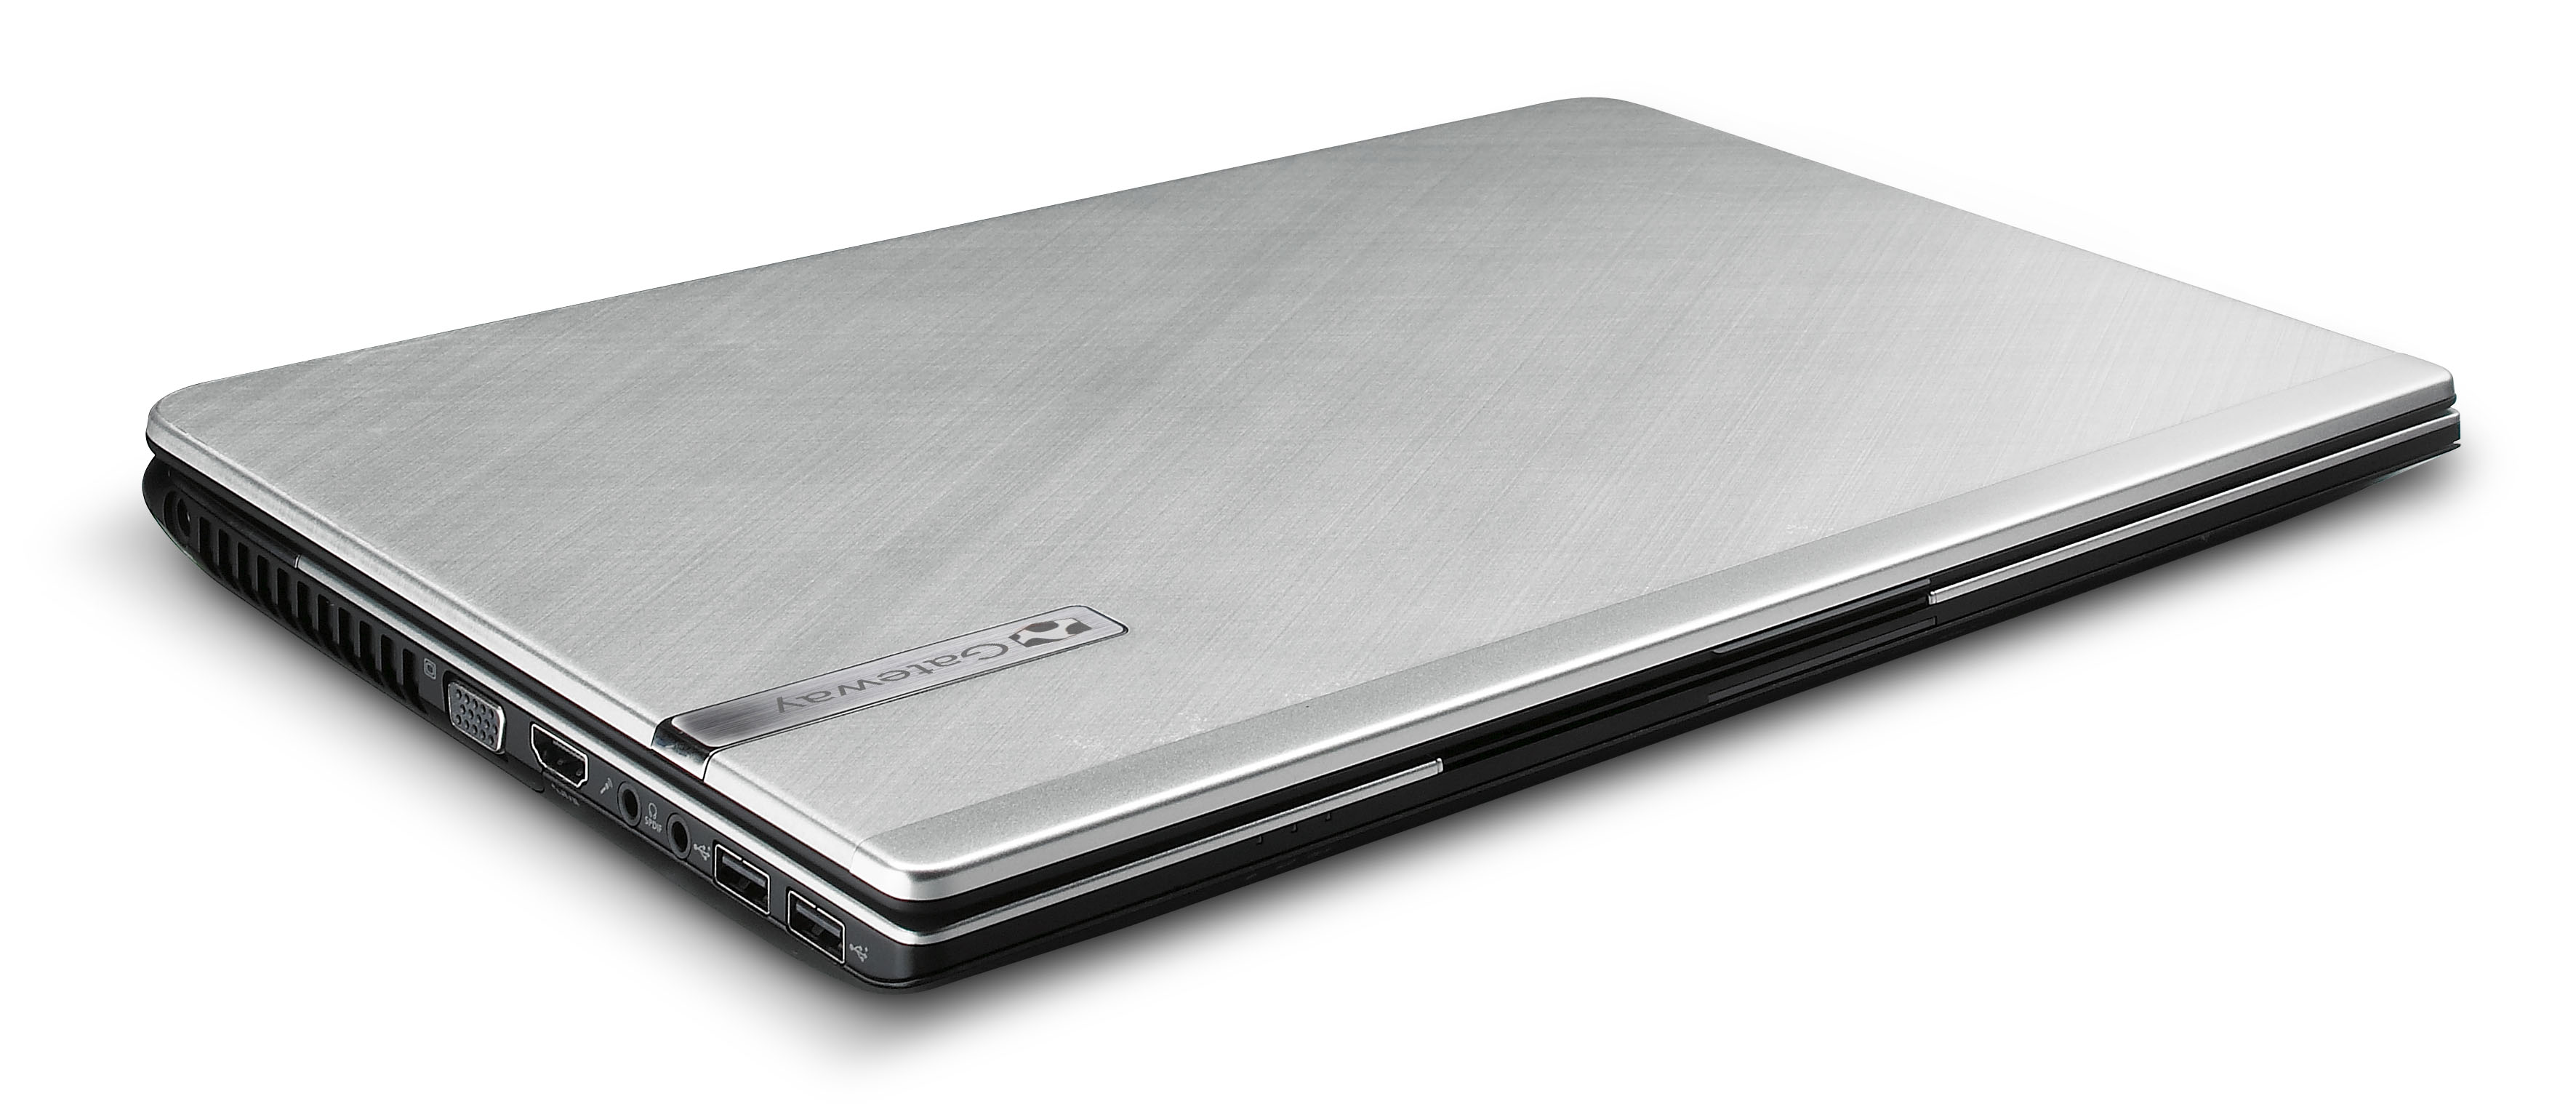 Ноутбук в металлическом корпусе. Ноутбук MSI 14 дюймов ультратонкий алюминиевый корпус. Ноутбук самсунг тонкий алюминиевый корпус. ASUS ноутбук метал корпус. Самсунг в титановом корпусе.